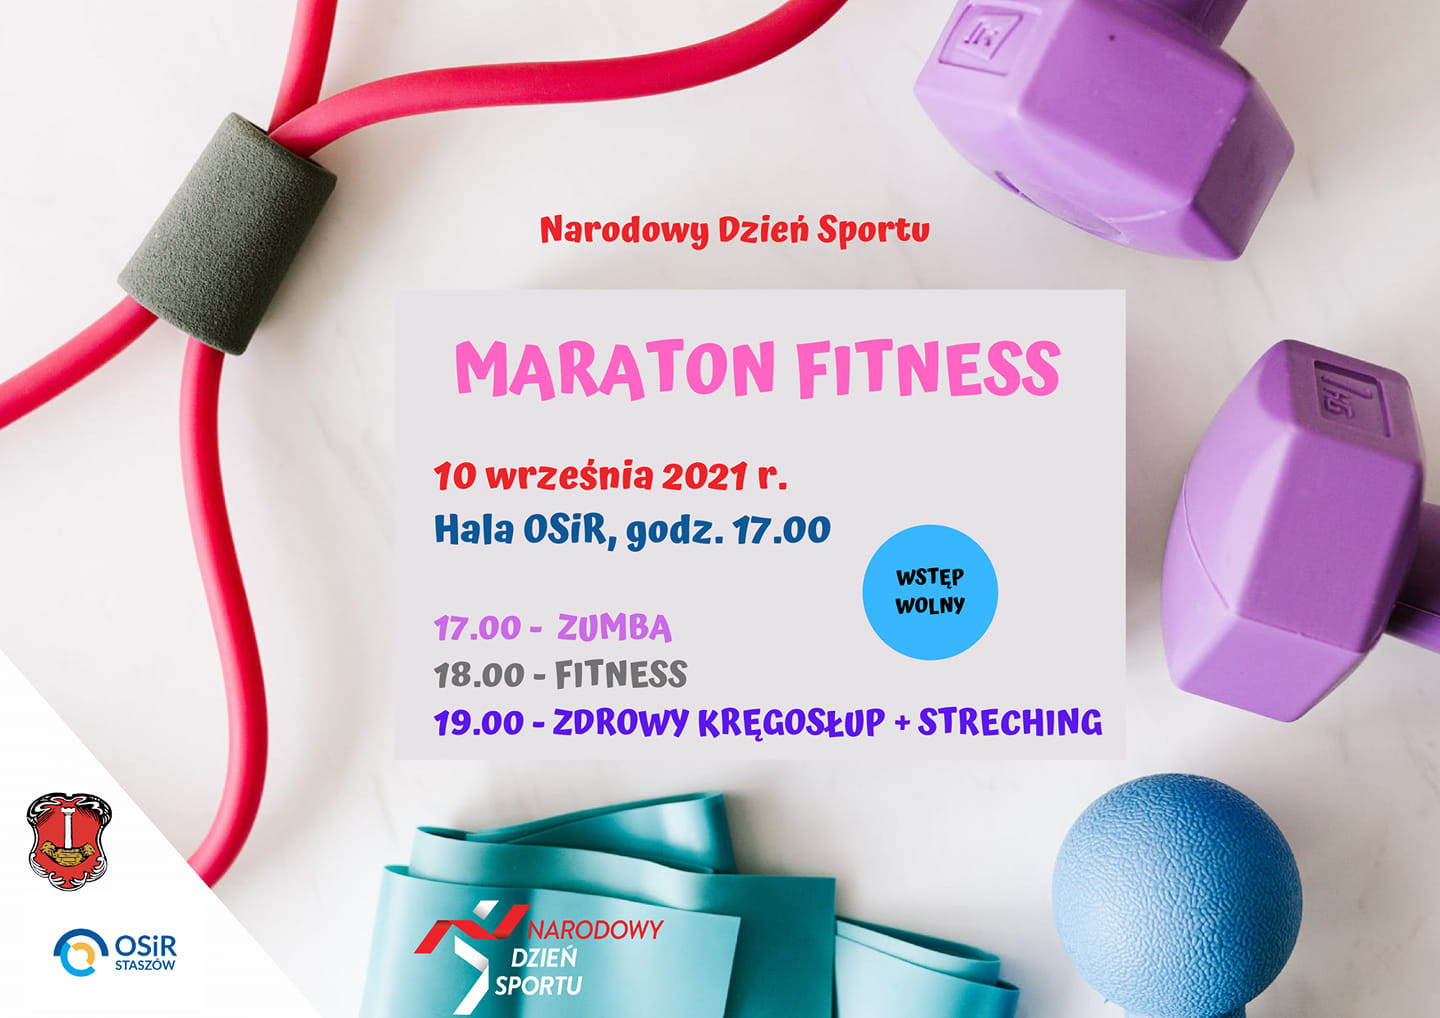 Plakat: W piątek, 10 września zapraszamy na Maraton Fitness z okazji Narodowego Dnia Sportu. Start godz. 17.00, hala OSiR.